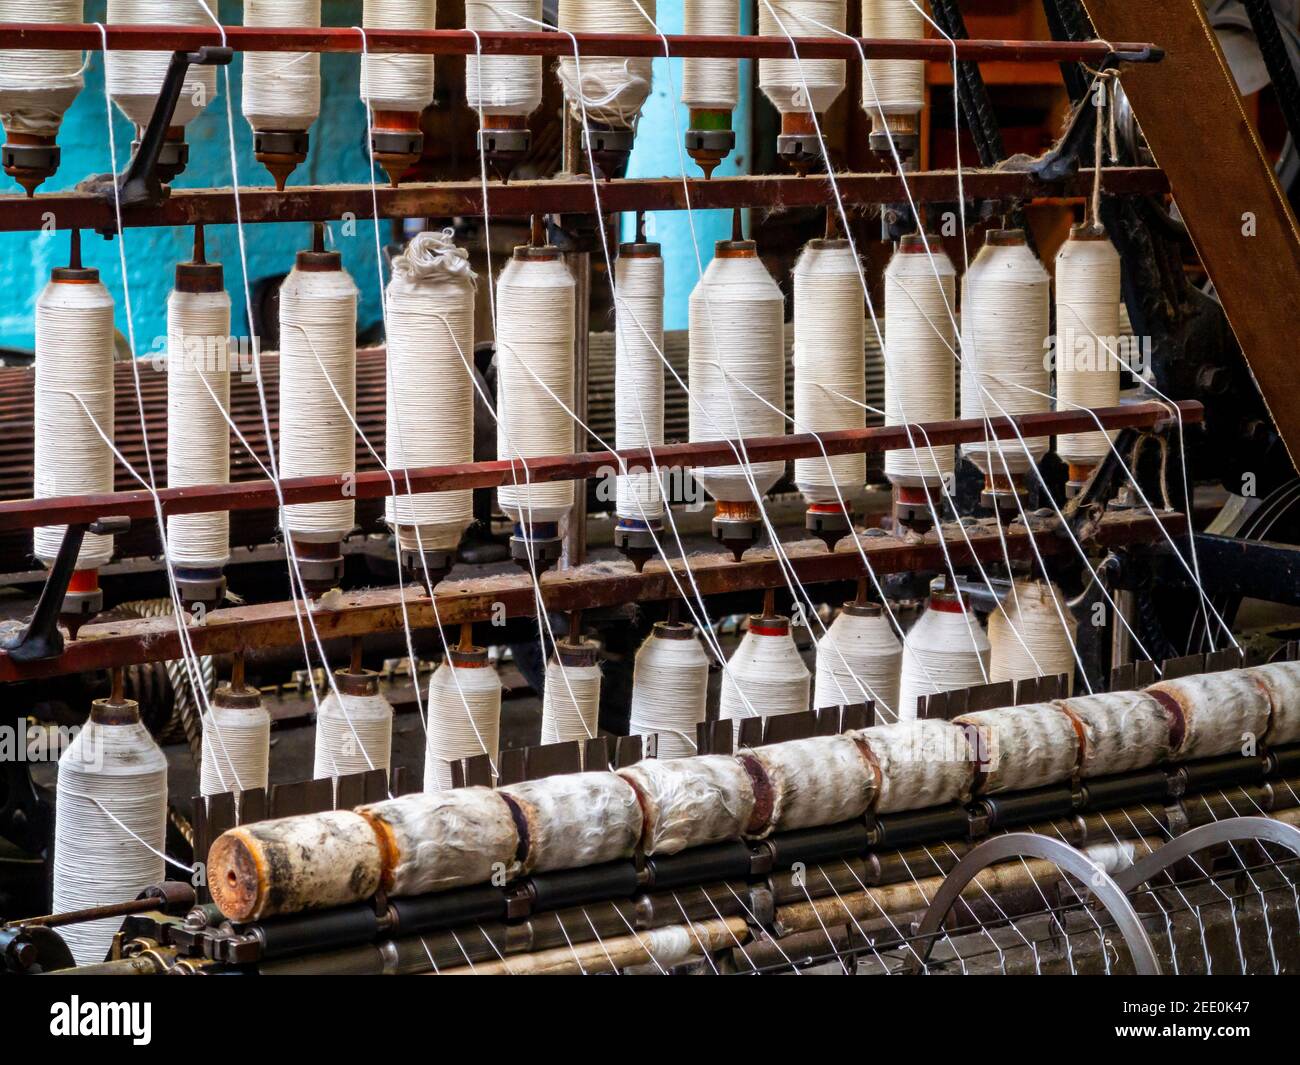 Yarn Spinning Machines – Stock Editorial Photo © robert_g #95706440